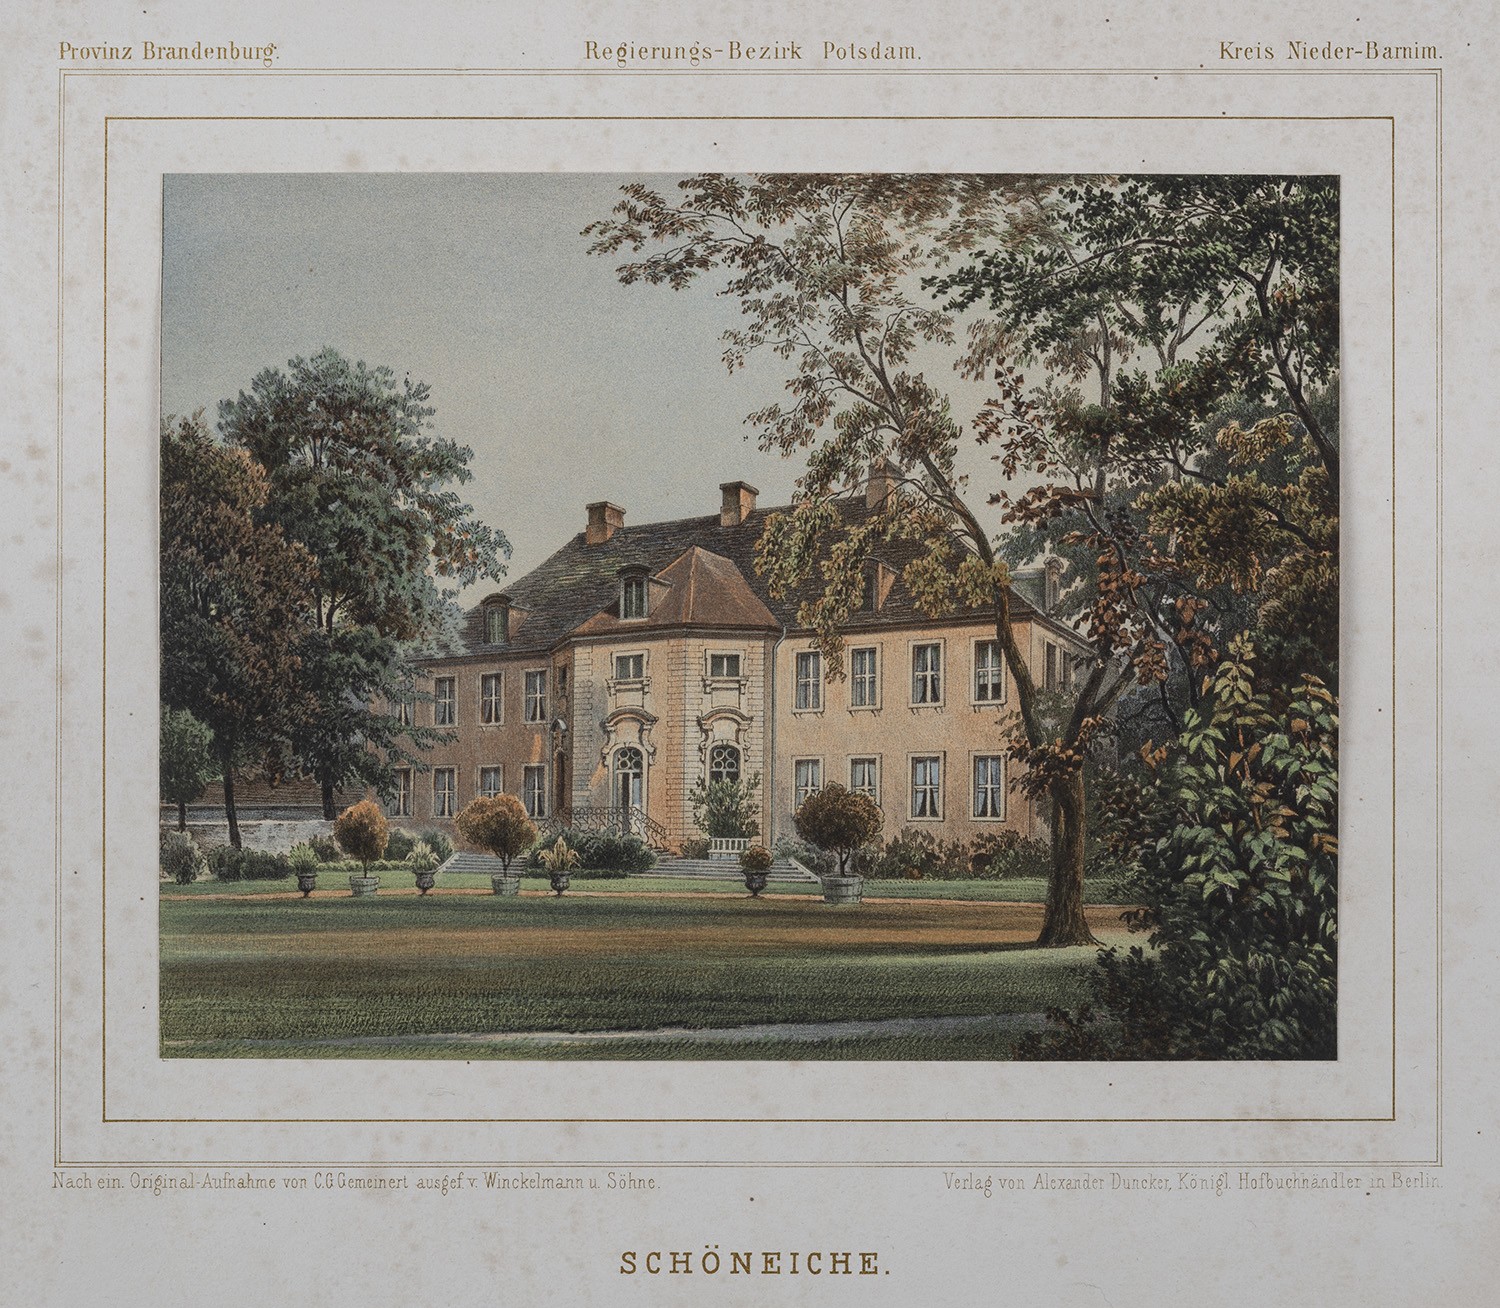 Schöneiche (Kr. Niederbarnim): Herrenhaus von Süden (Landesgeschichtliche Vereinigung für die Mark Brandenburg e.V., Archiv CC BY)